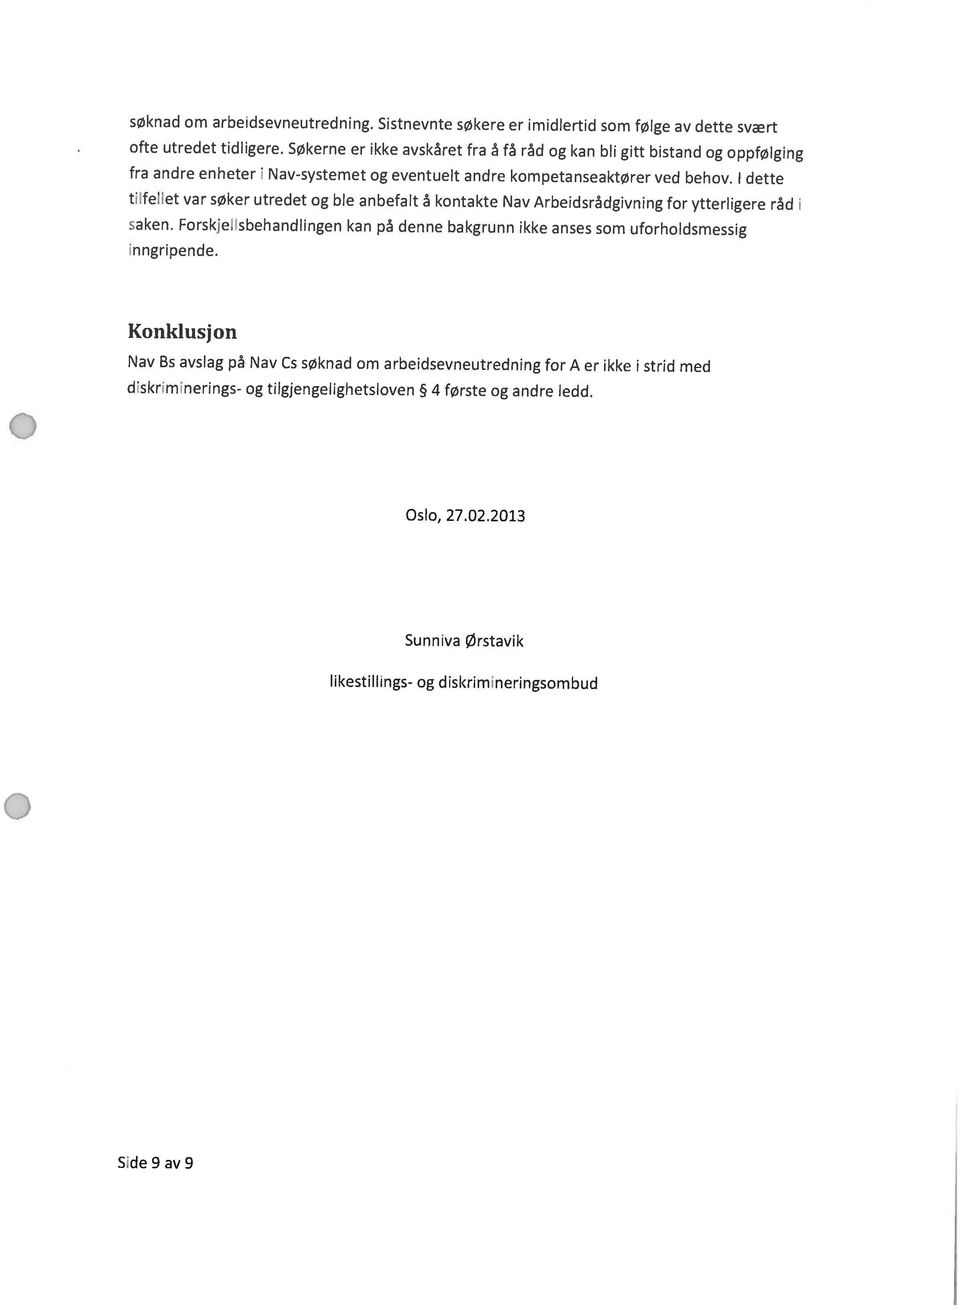 dette Side 9 av 9 likestillings- og diskrimineringsombud Sunniva Ørstavik Oslo, 27.022013 diskriminerings- og tilgjengeiighetsæven 4 første og andre ledd.